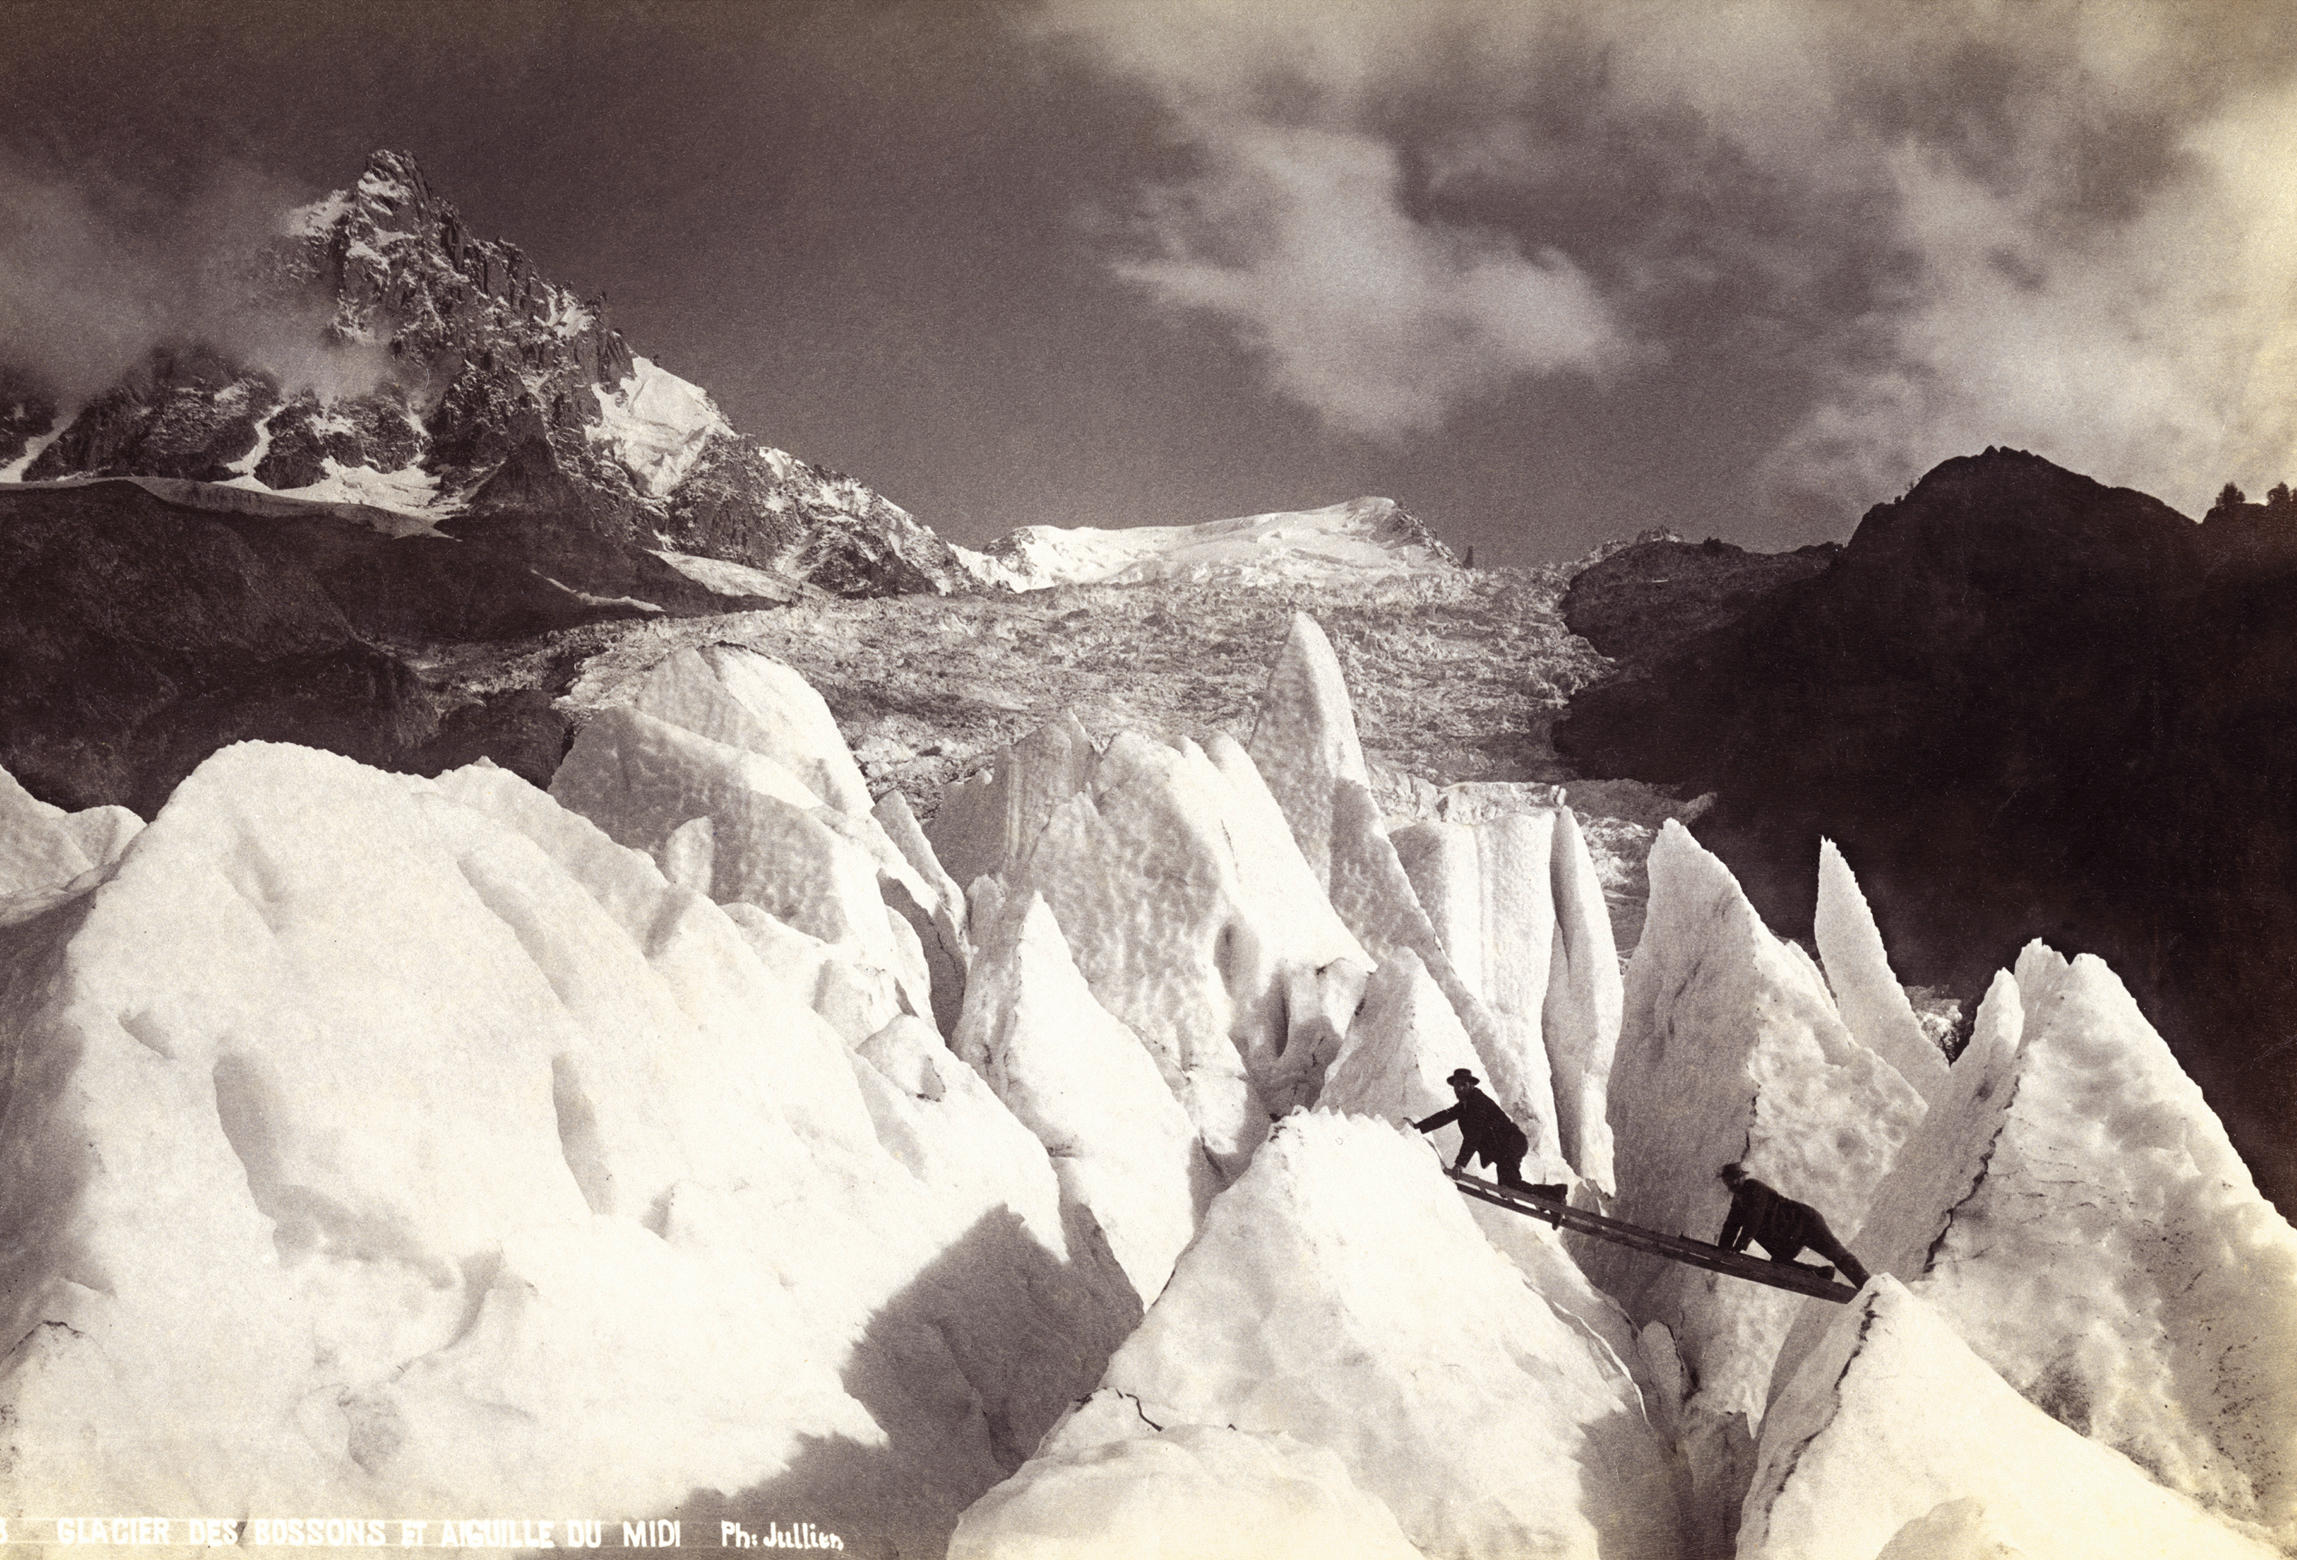 Archivbild zwei Männer klettern mit einer Leiter über den Gletscher